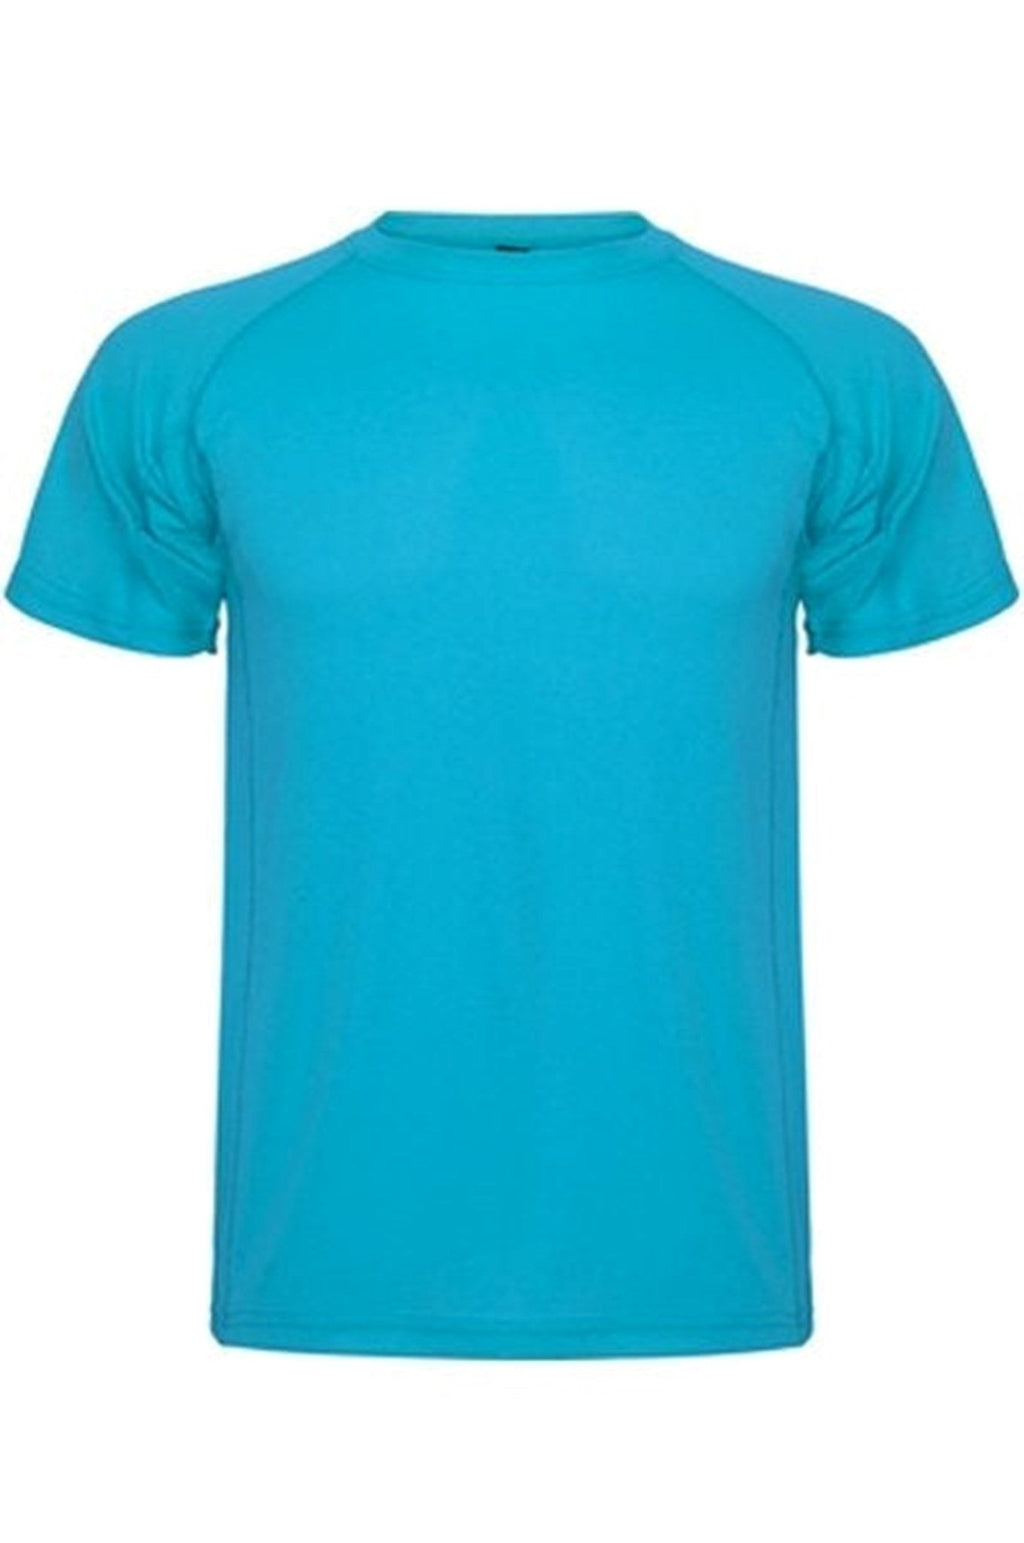 Treniruotės marškinėliai - turkio spalvos mėlyna